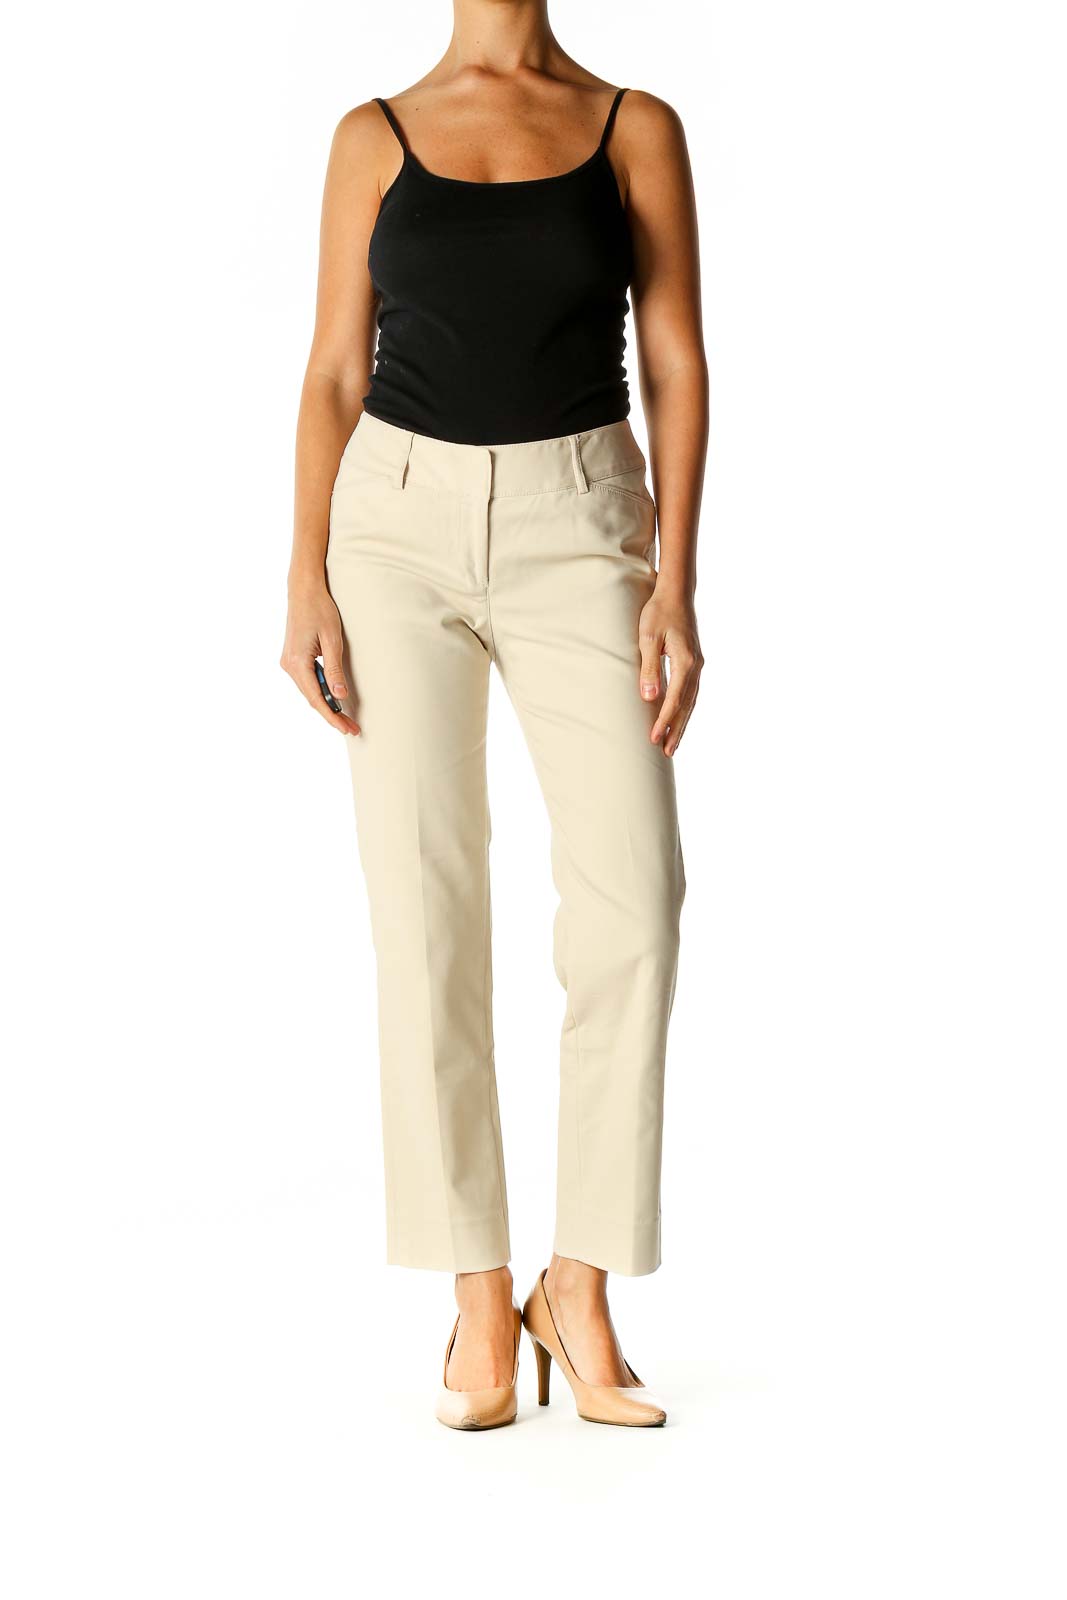 J.McLaughlin Black Stretch Pants Trousers Rayon Nylon Spandex Women's Size  4 | eBay